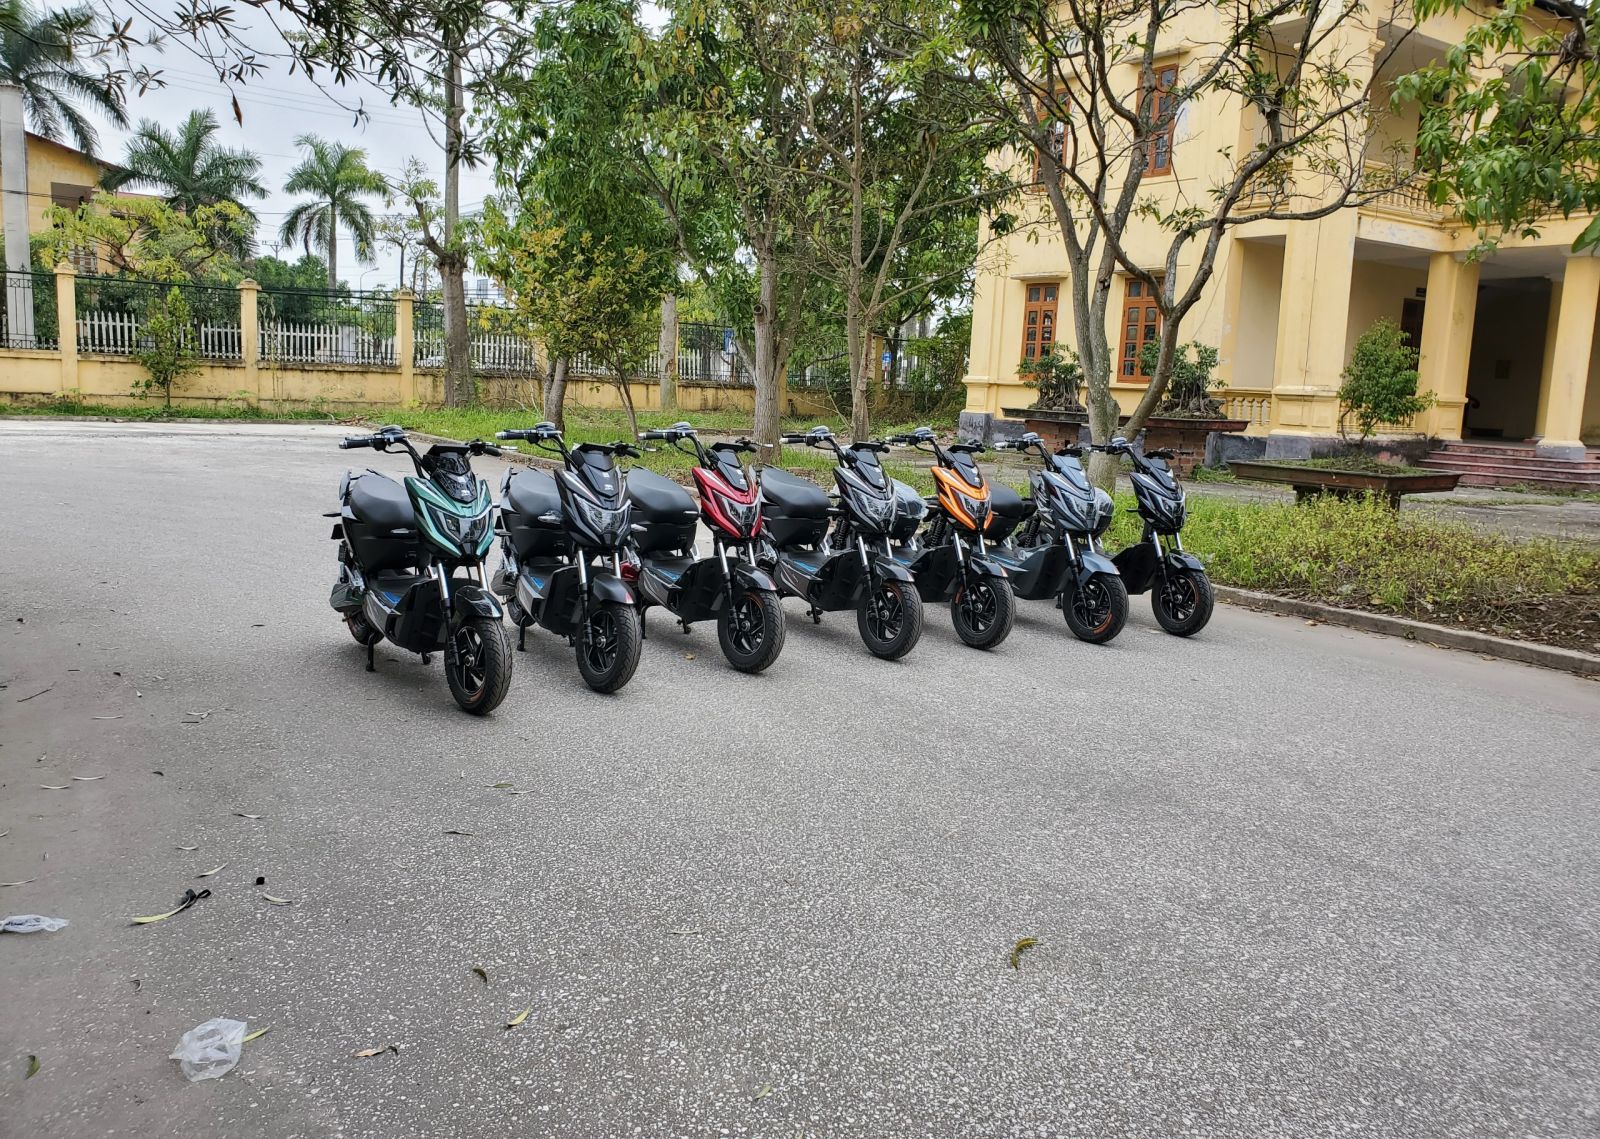 Học sinh cấp 2 có được sử dụng xe máy điện Xmen Neo Dibao 2021?